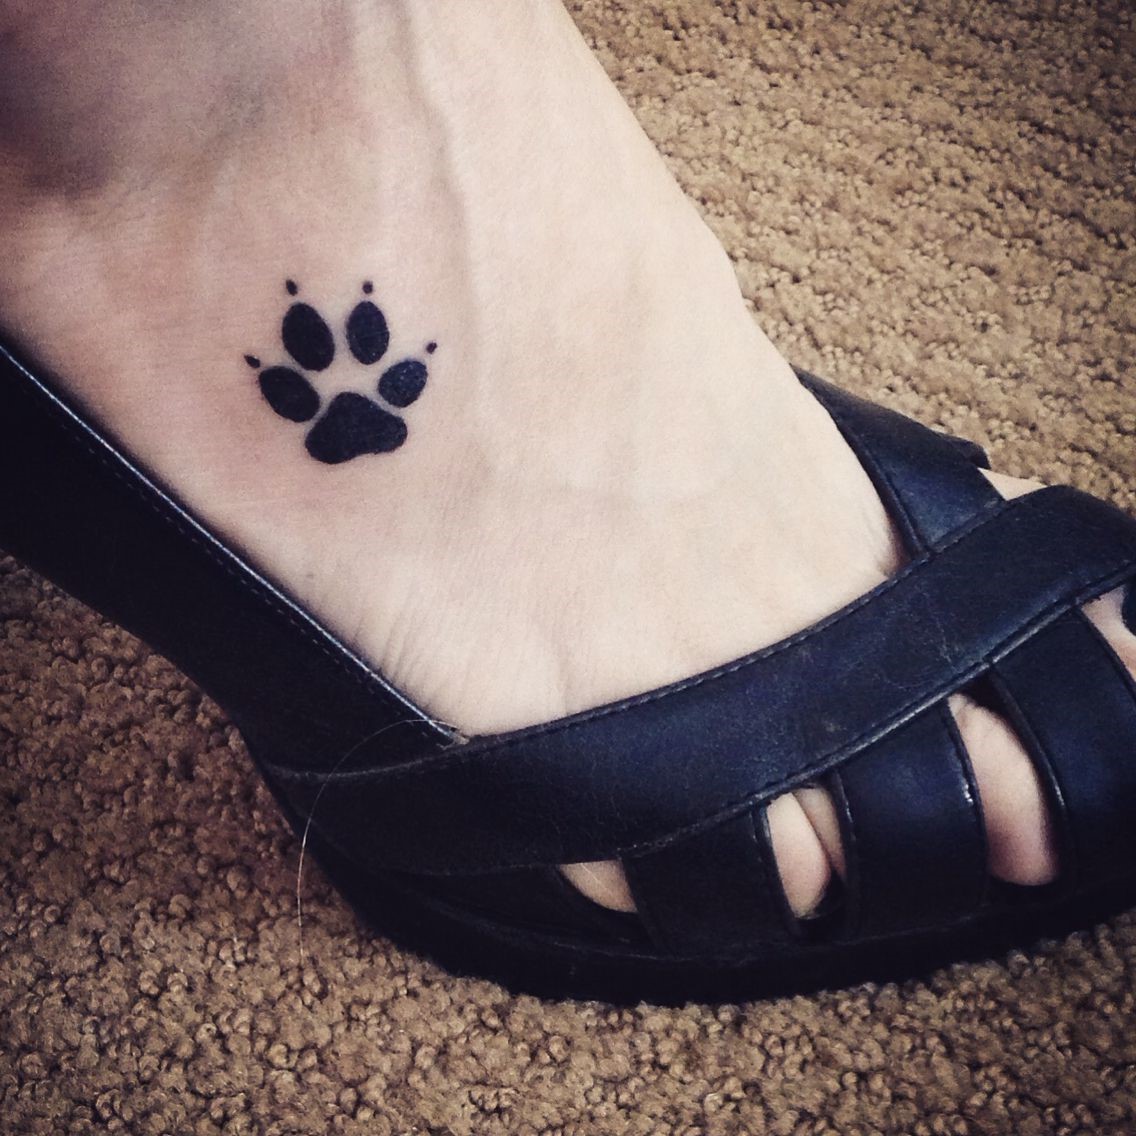 Le pied est un endroit stratégique pour se faire tatouer, car vous pouvez toujours masquer le motif avec une chaussure.